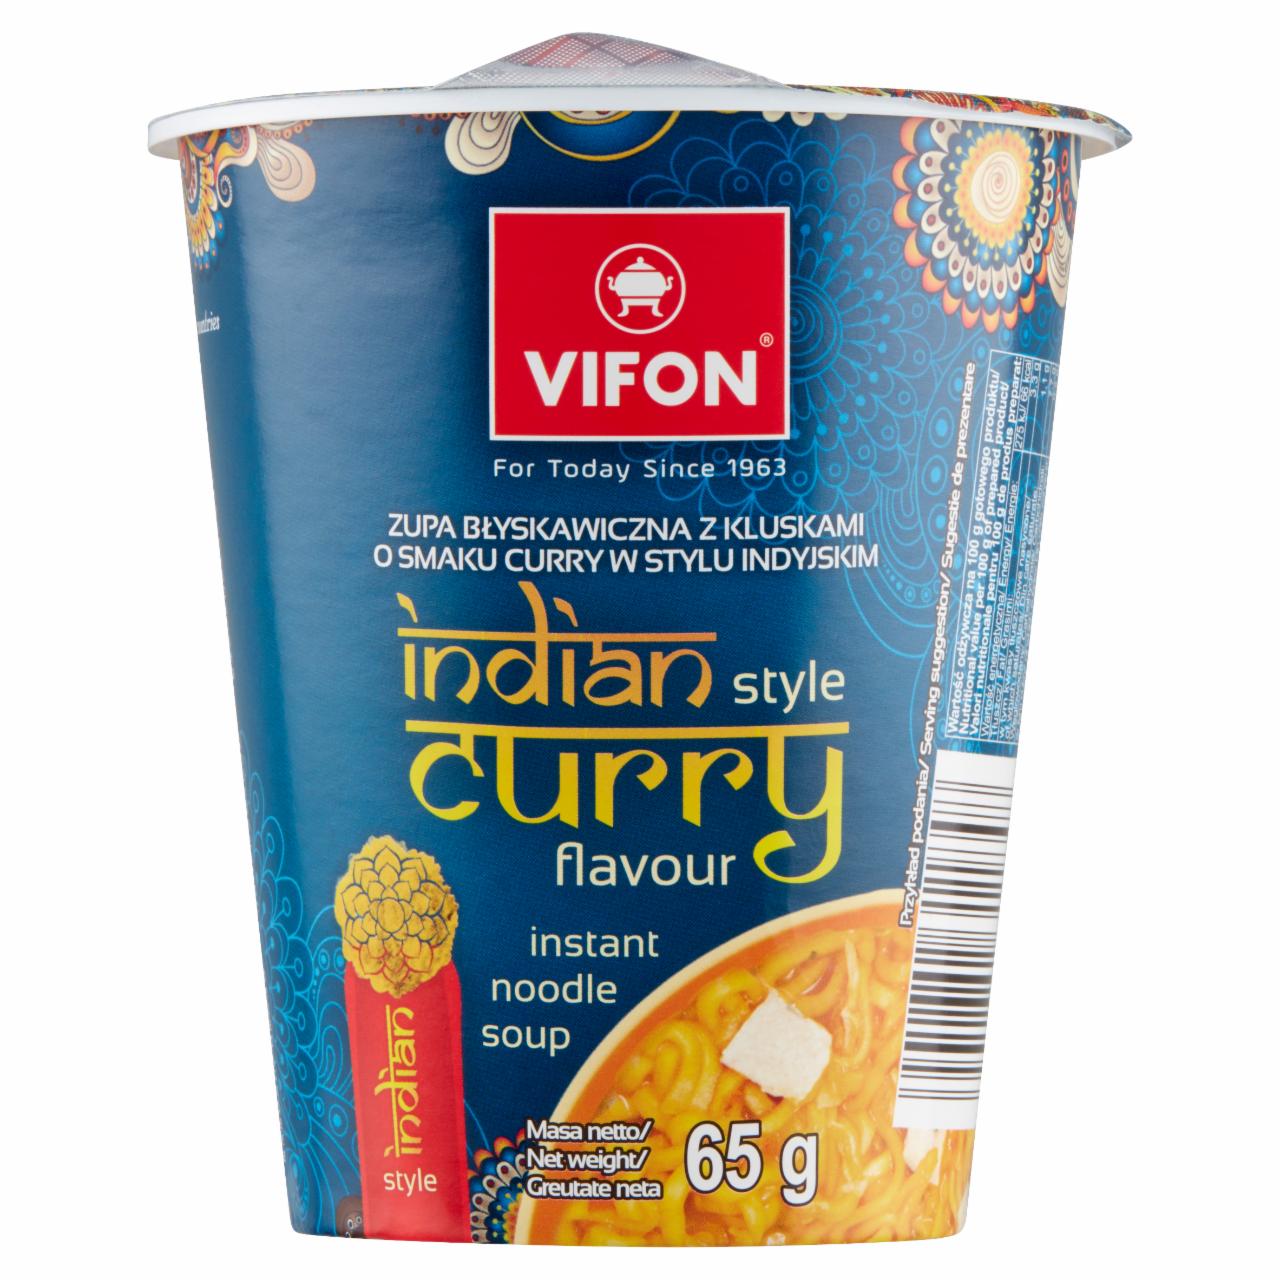 Fotografie - Zupa z kluskami o smaku curry w stylu indyjskim Vifon